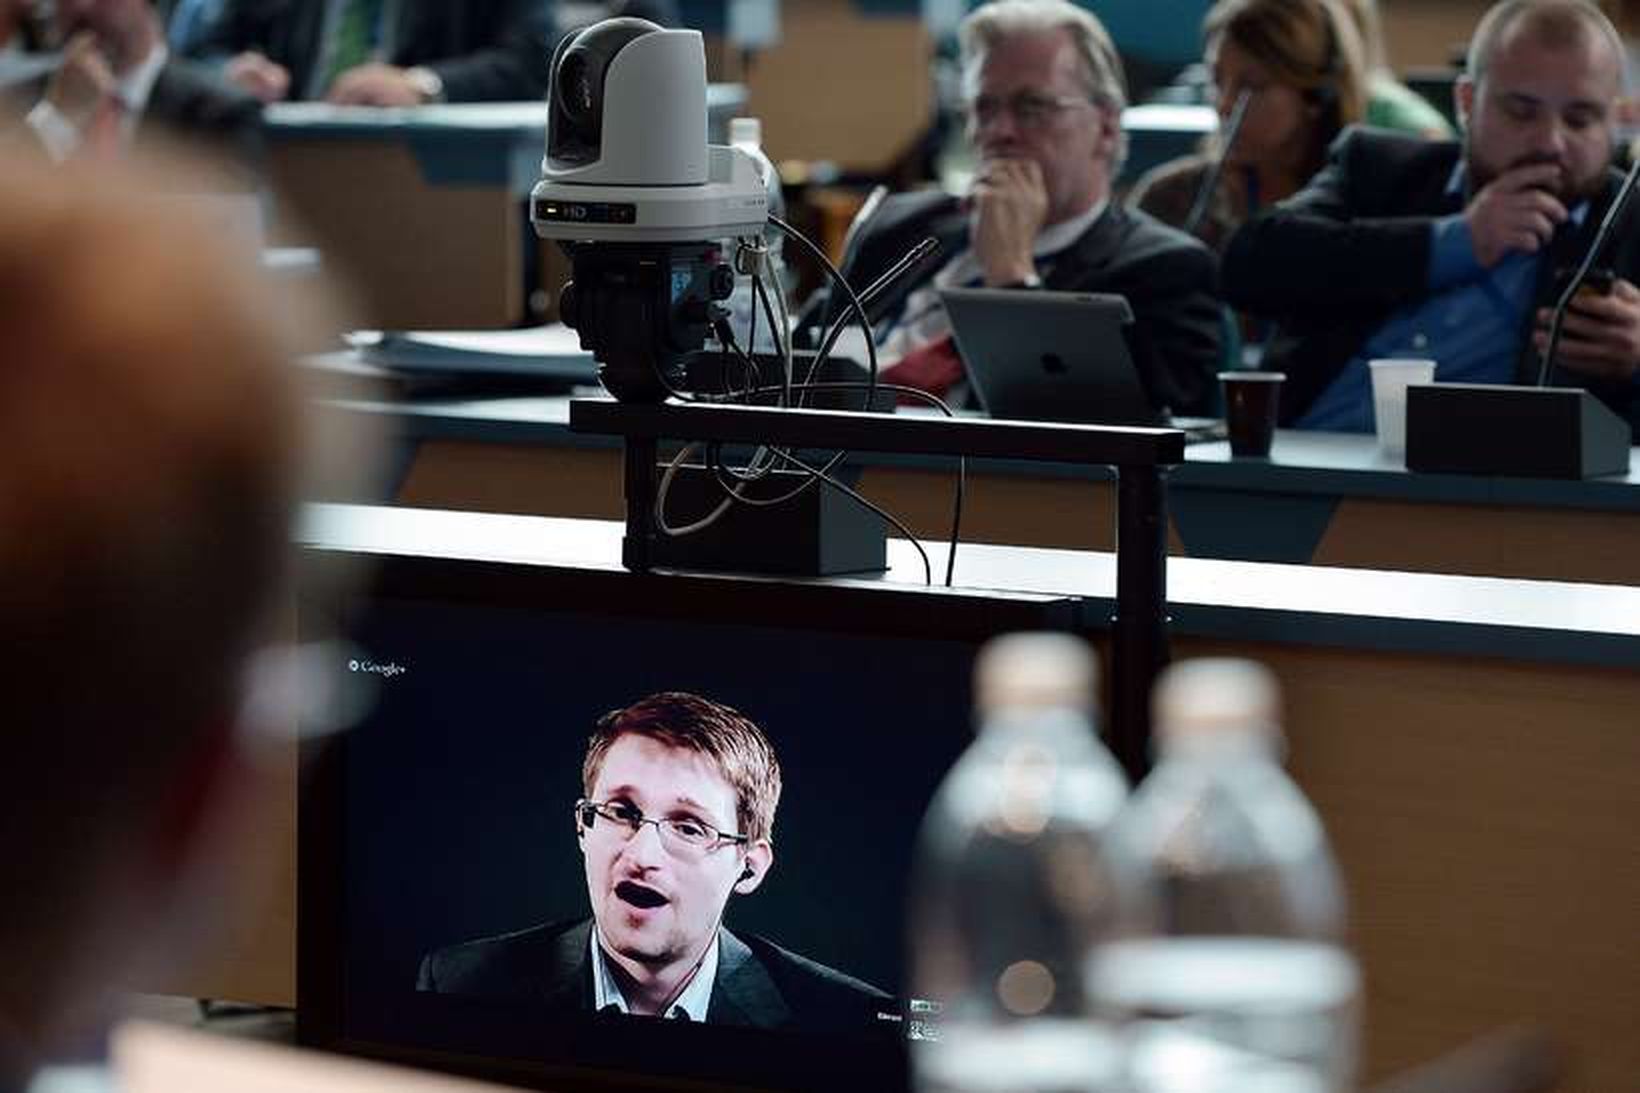 Edward Snowden starfaði áður hjá National Security Agency (NSA)